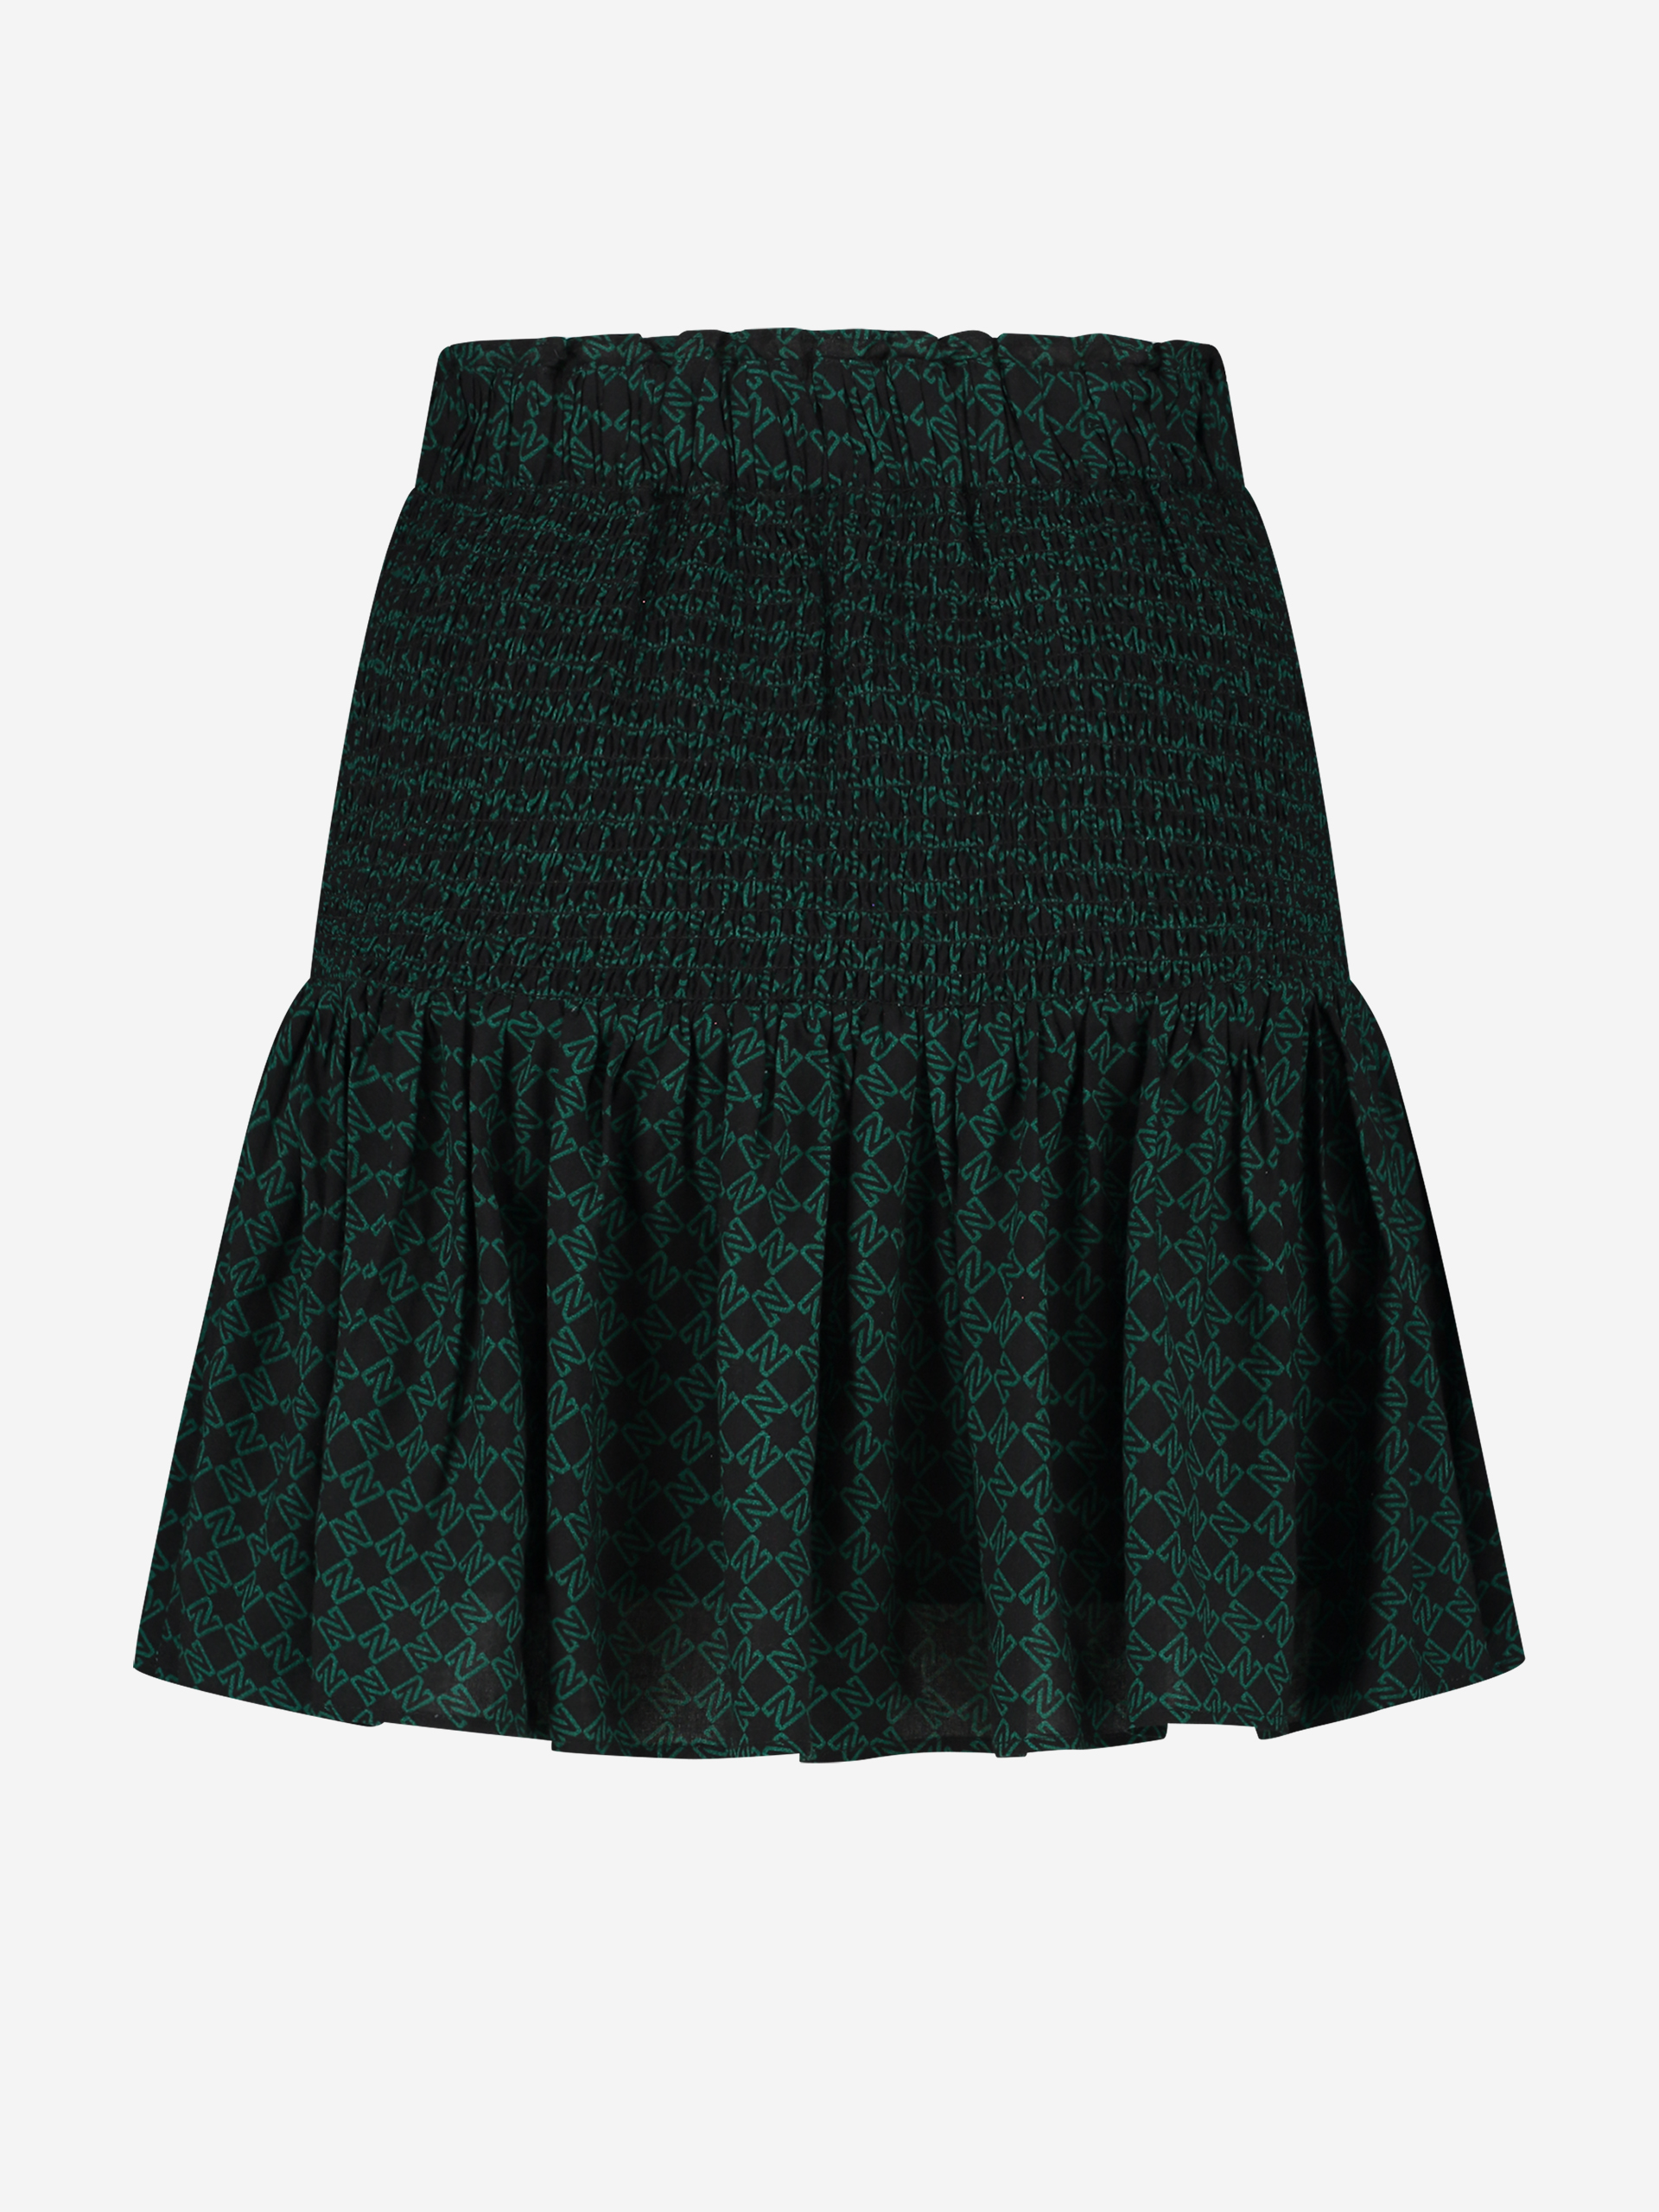 Rianca Skirt